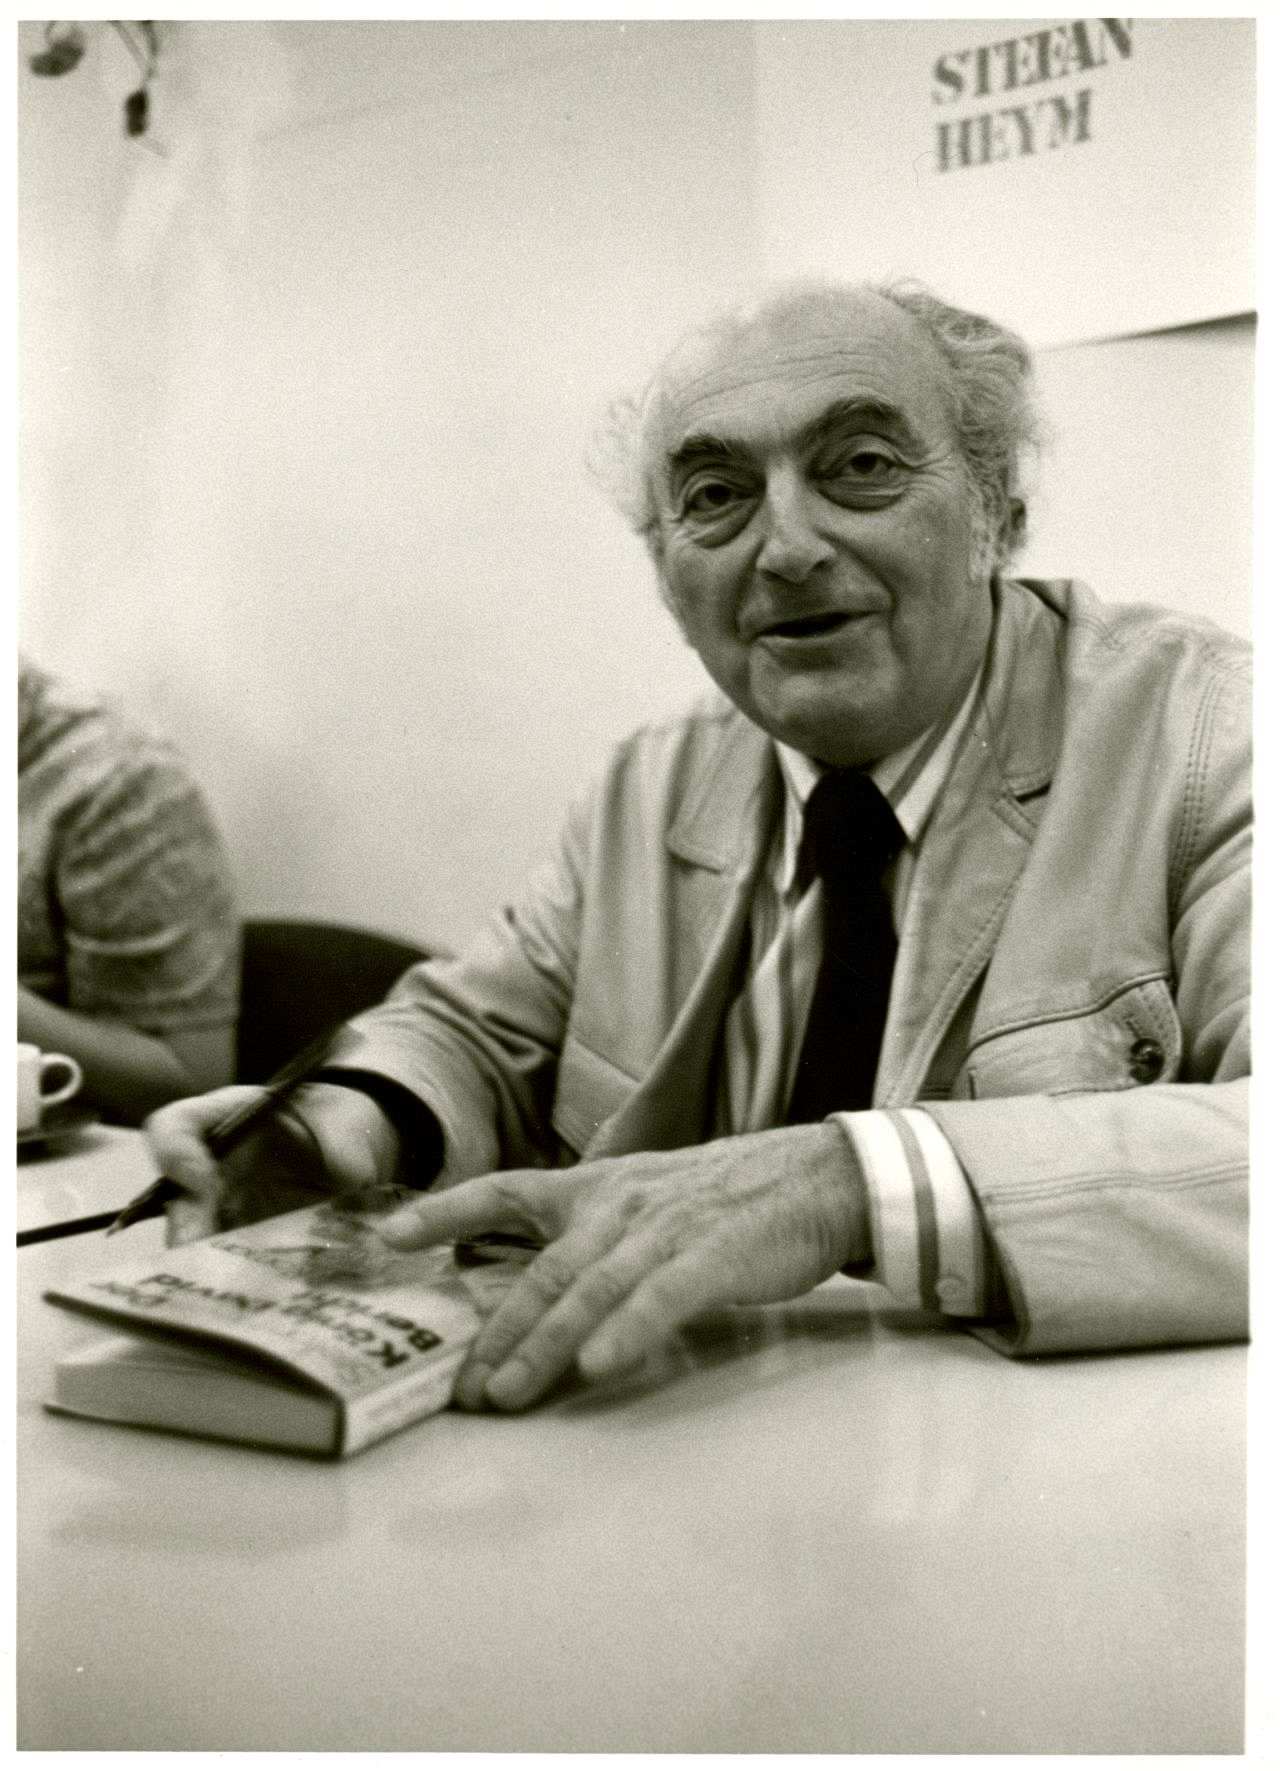 Fotografie von Stefan Heym während einer Lesung, 1976.